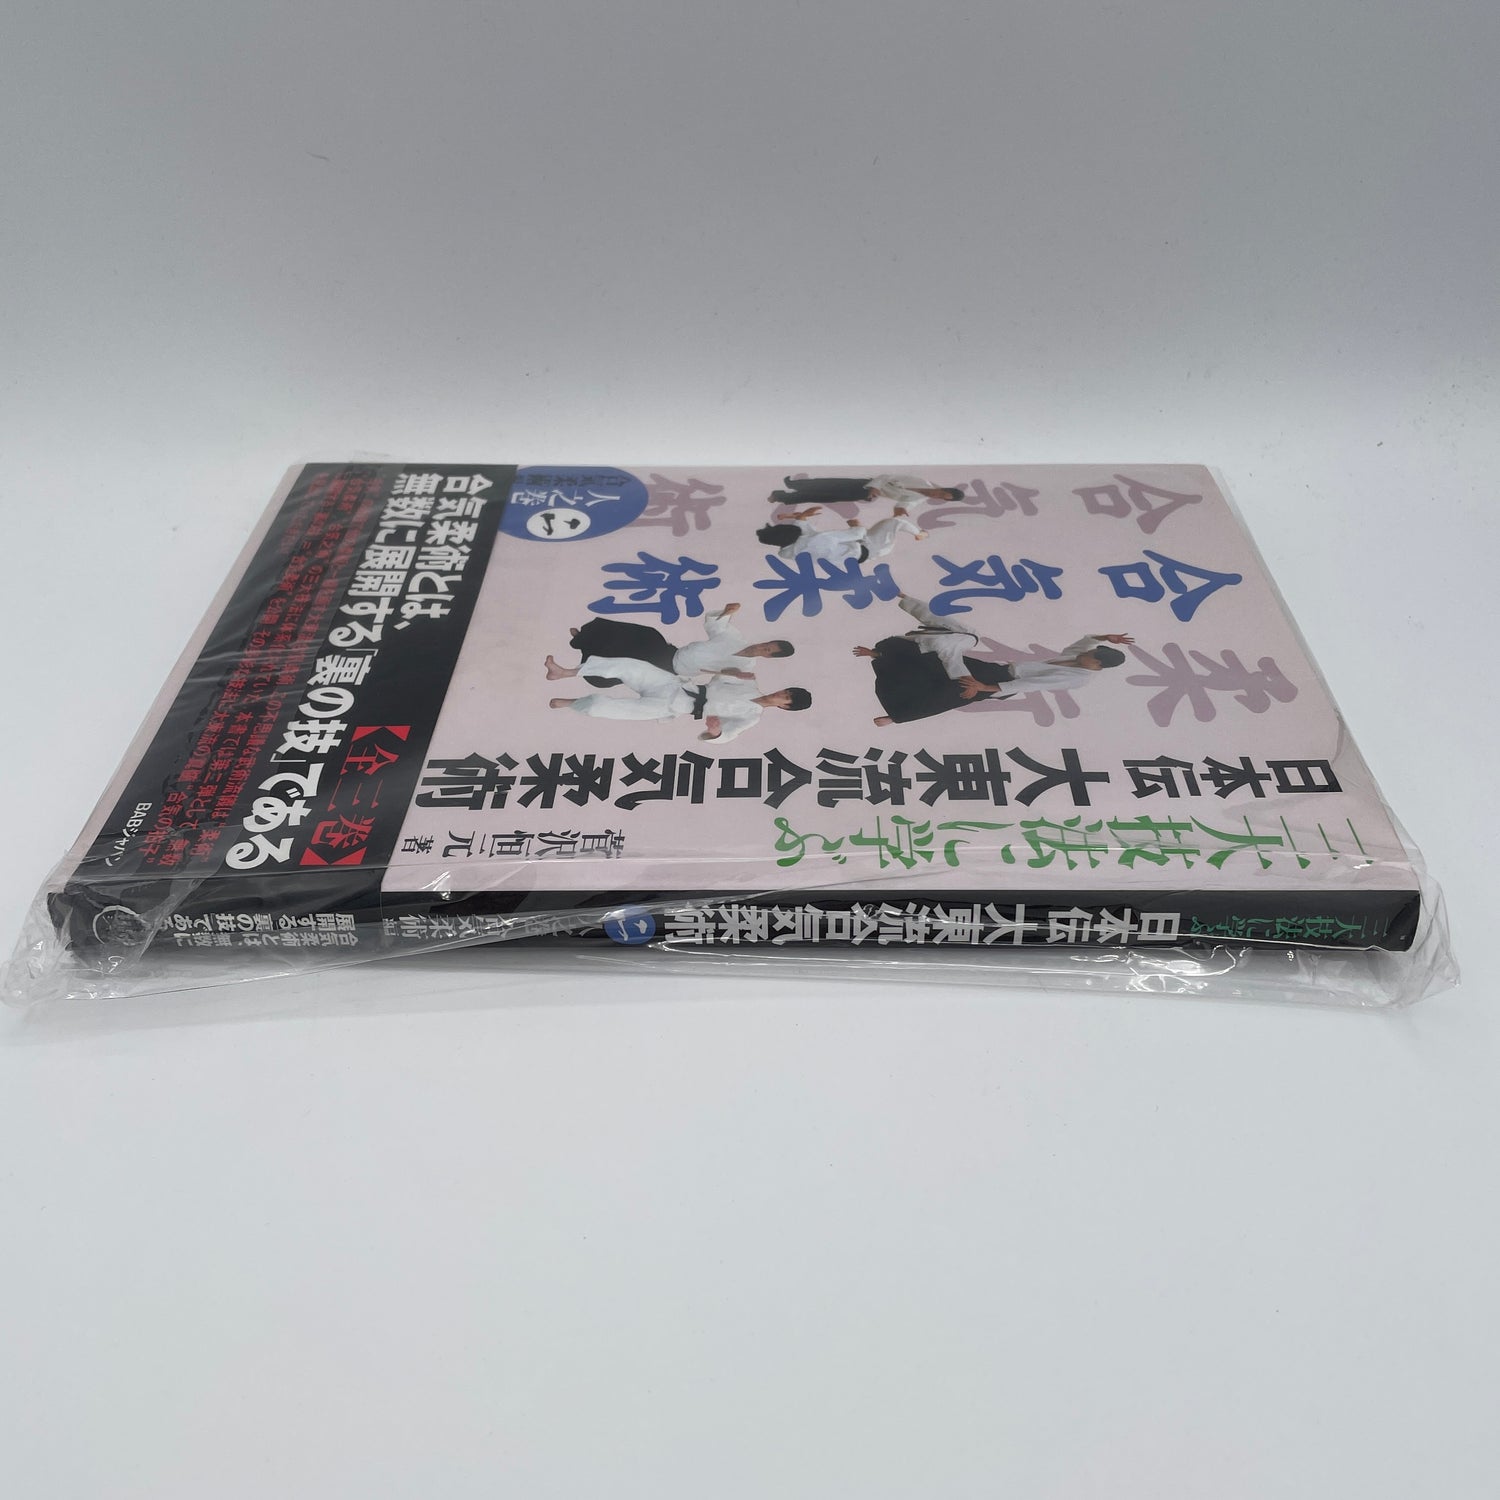 Nihonden Daito Ryu Aikijujutsu Book 2: Aikijujutsu By Kogen Sugasawa (Preowned)